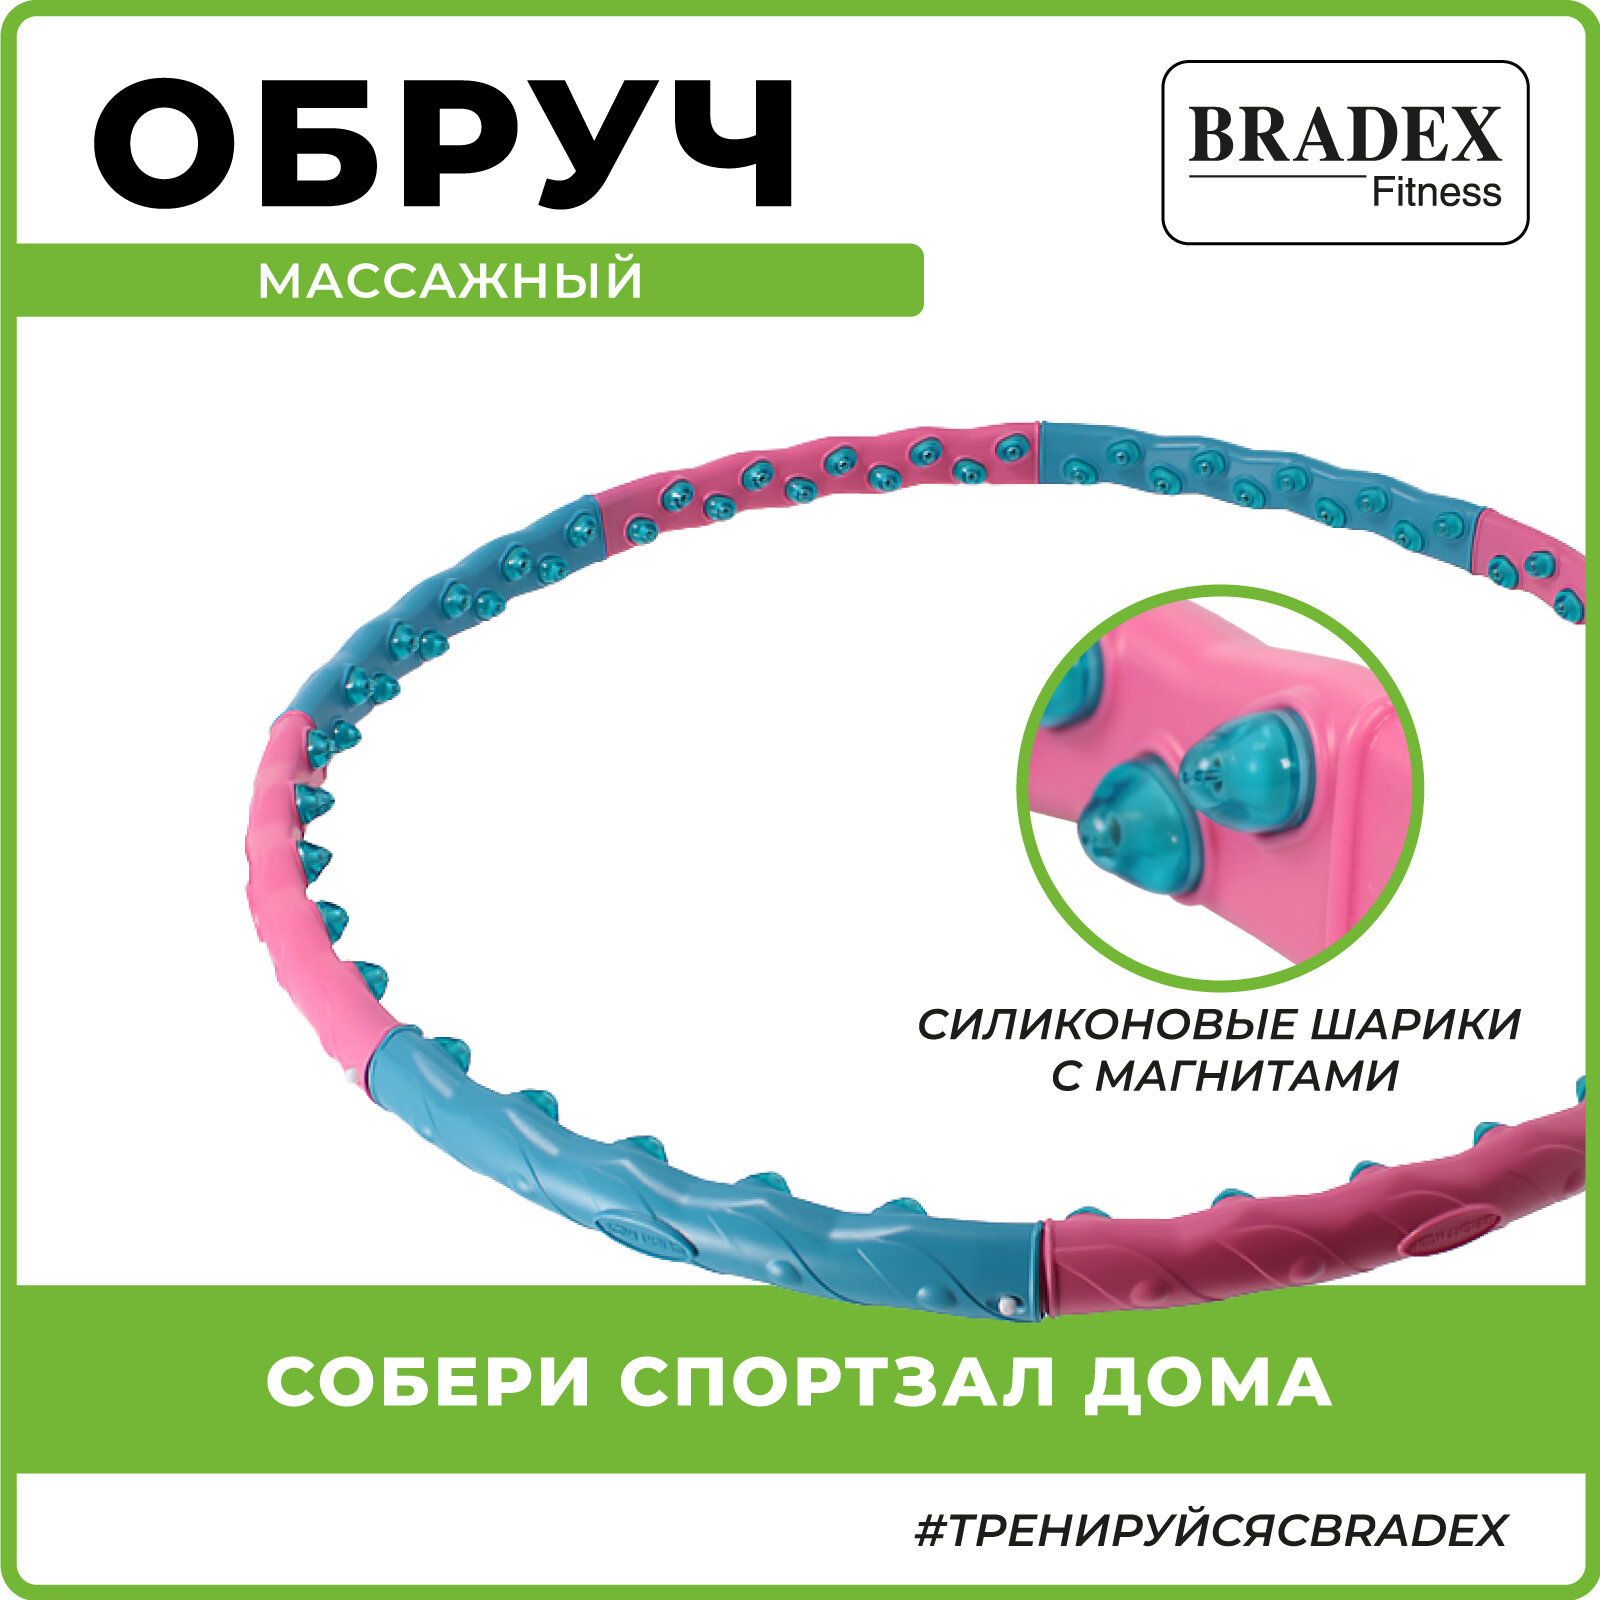 Обруч массажный Bradex c 80 силиконовыми шариками с магнитами, вес 1,45 кг (SF 0547)